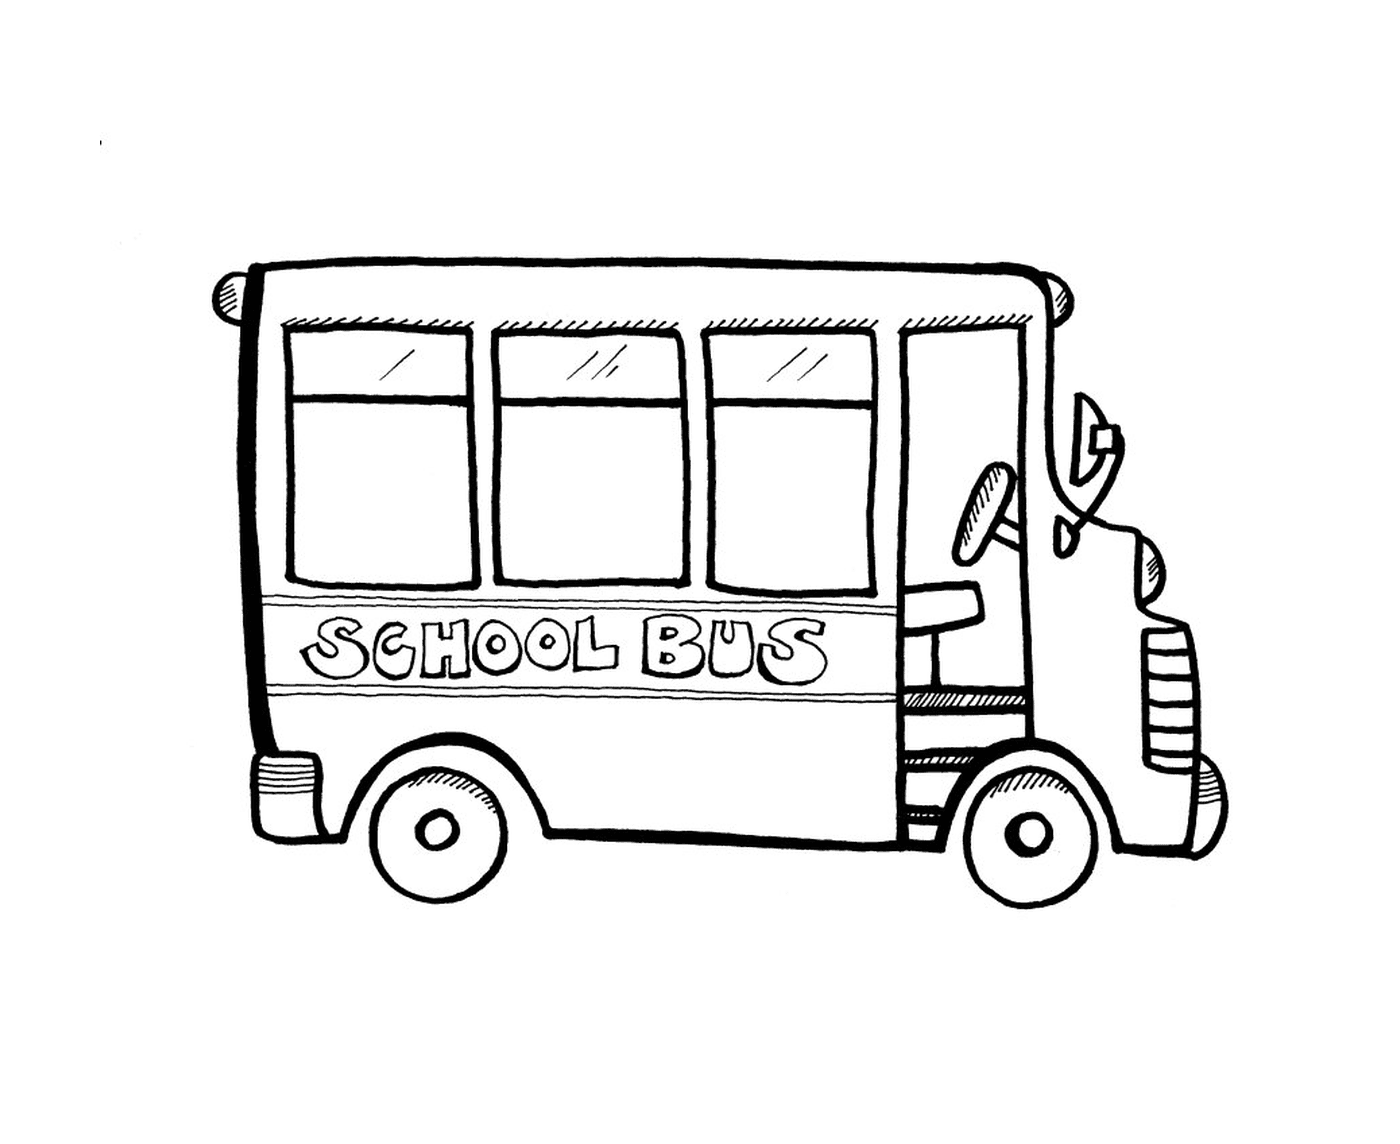   Bus scolaire vide 